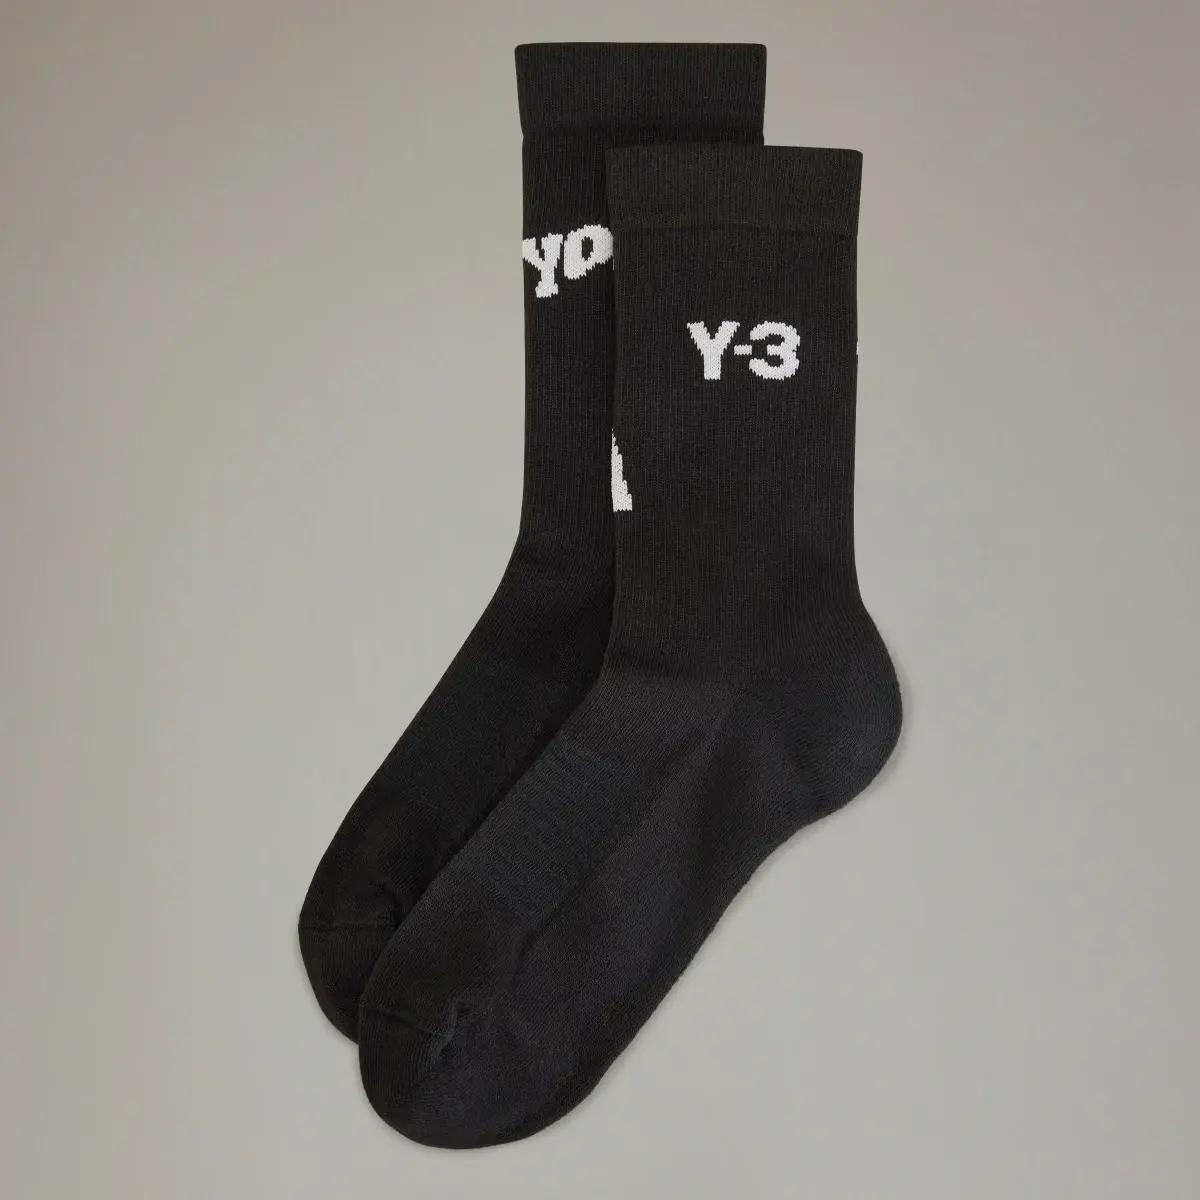 Adidas Y-3 Crew Socks. 1